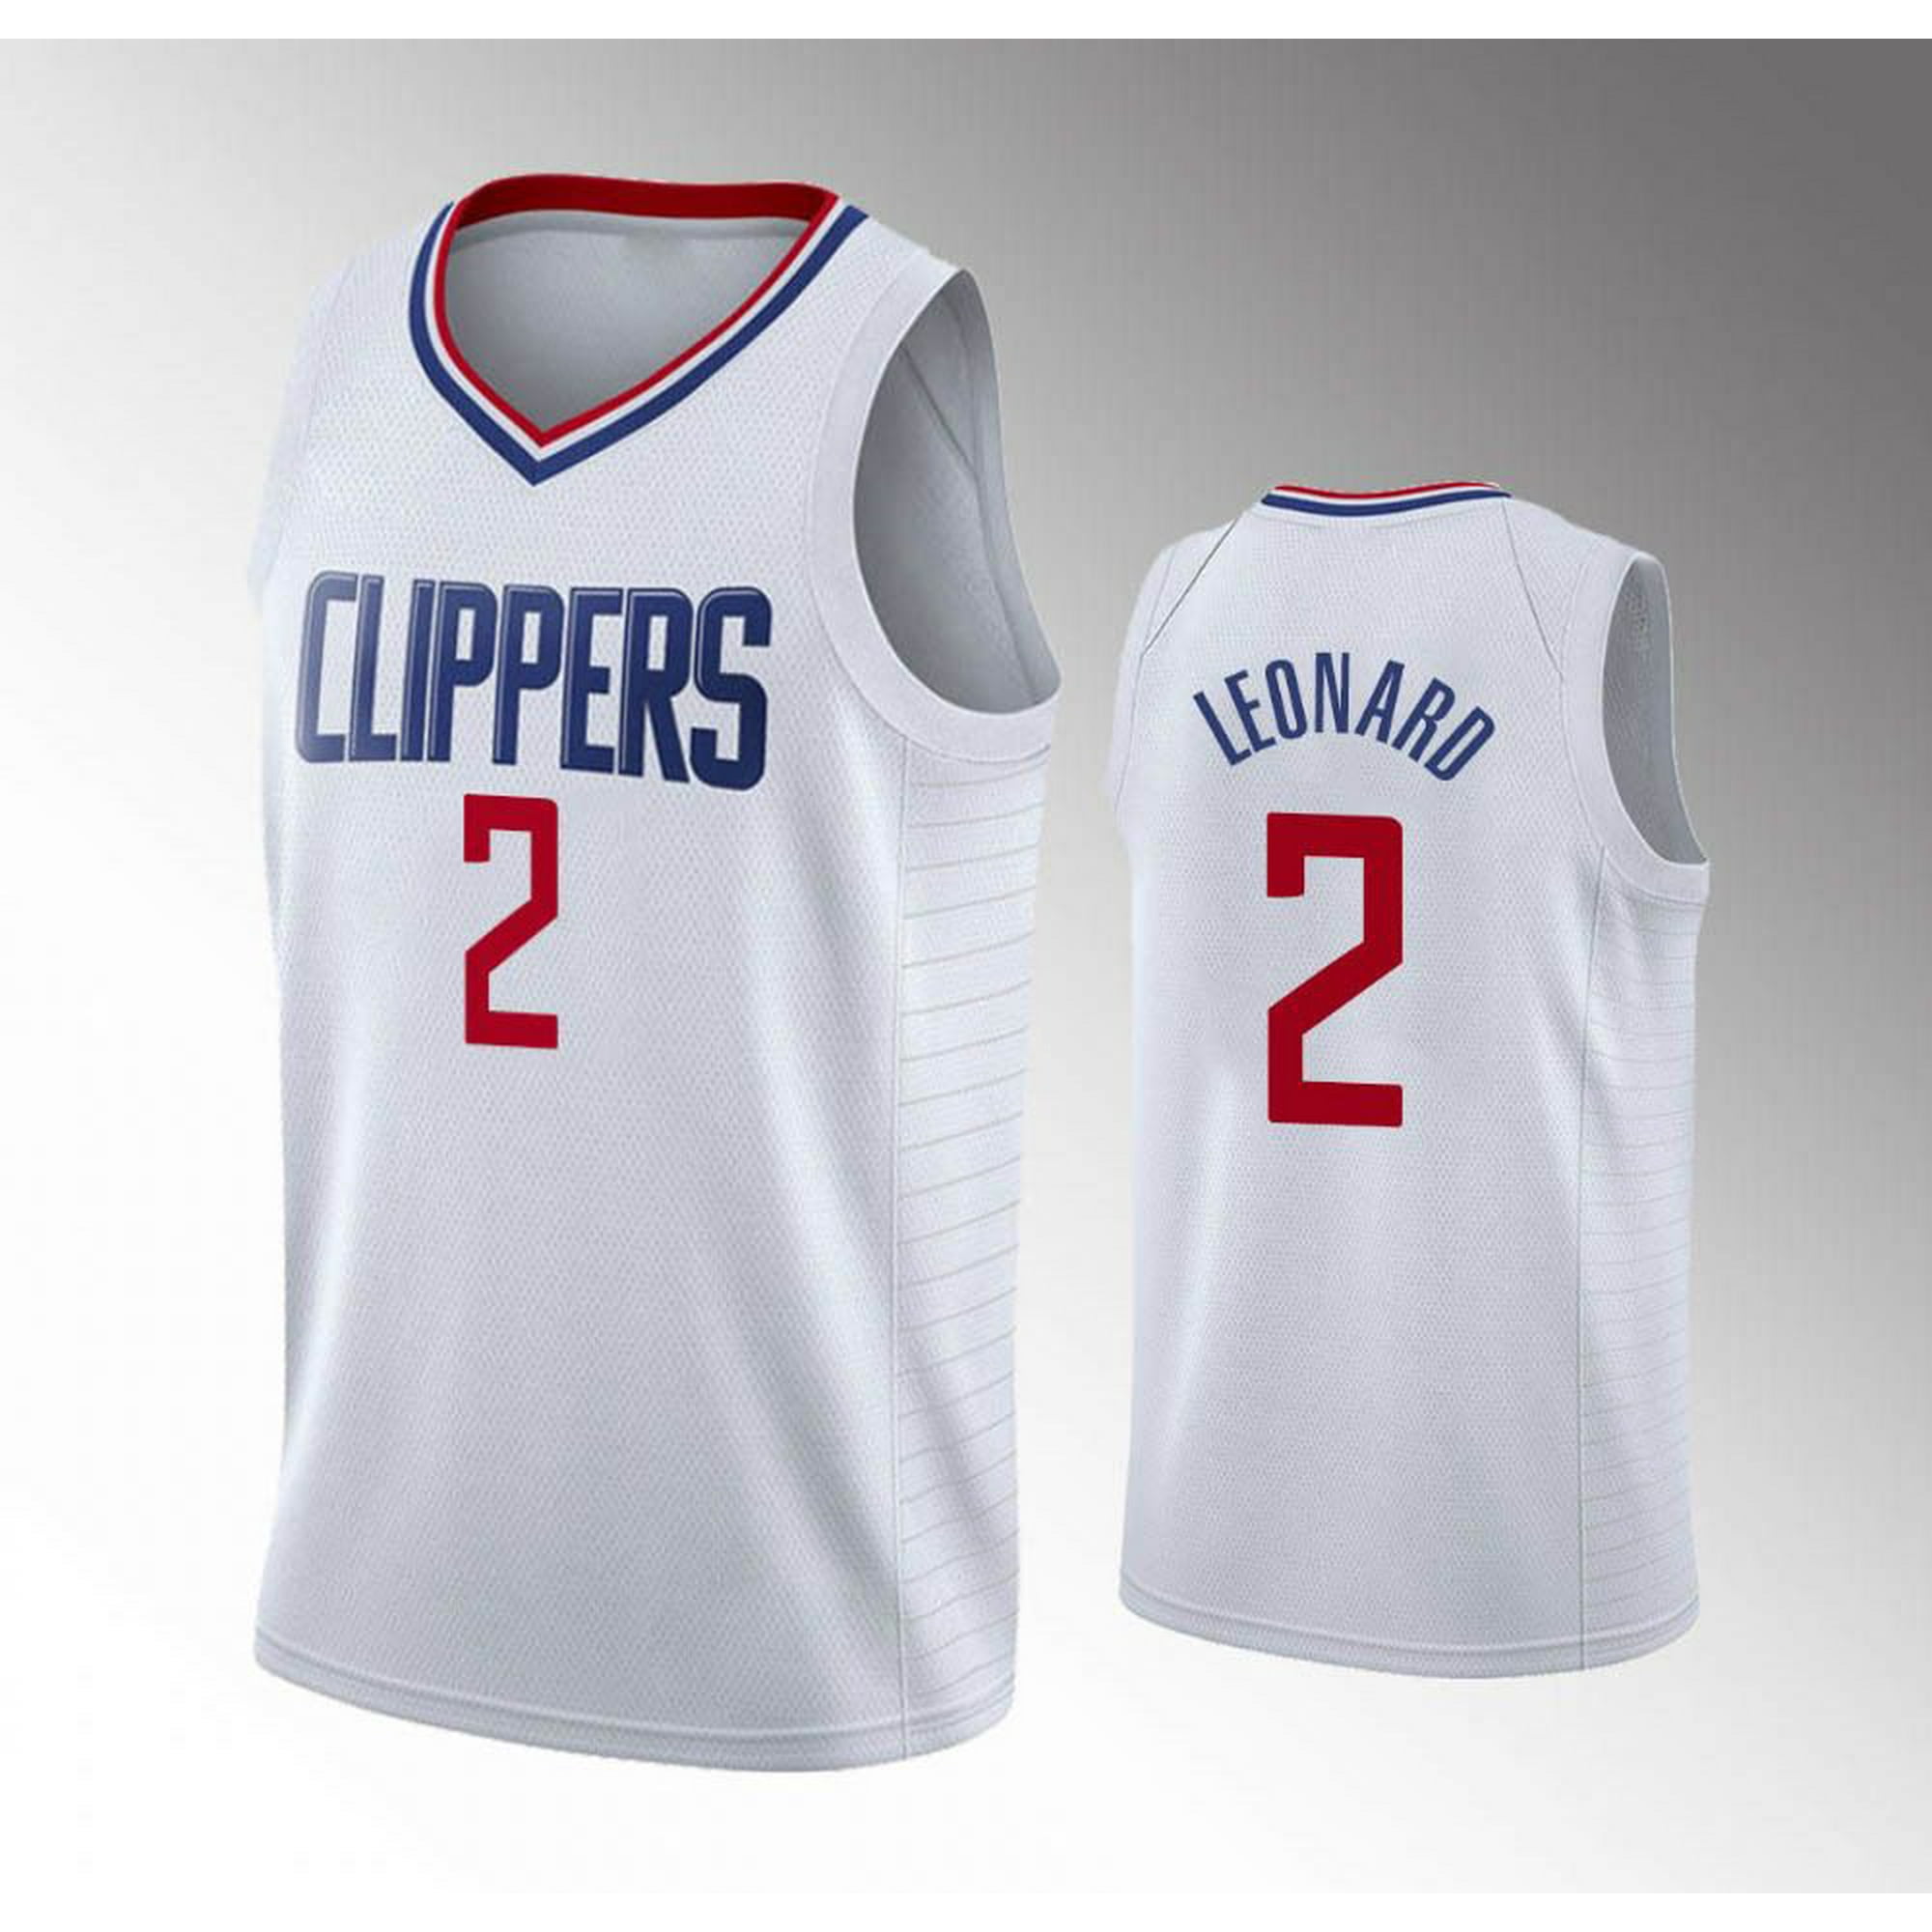 Kawhi Leonard Jerseys, Kawhi Clippers Jersey, Kawhi Leonard Shirts